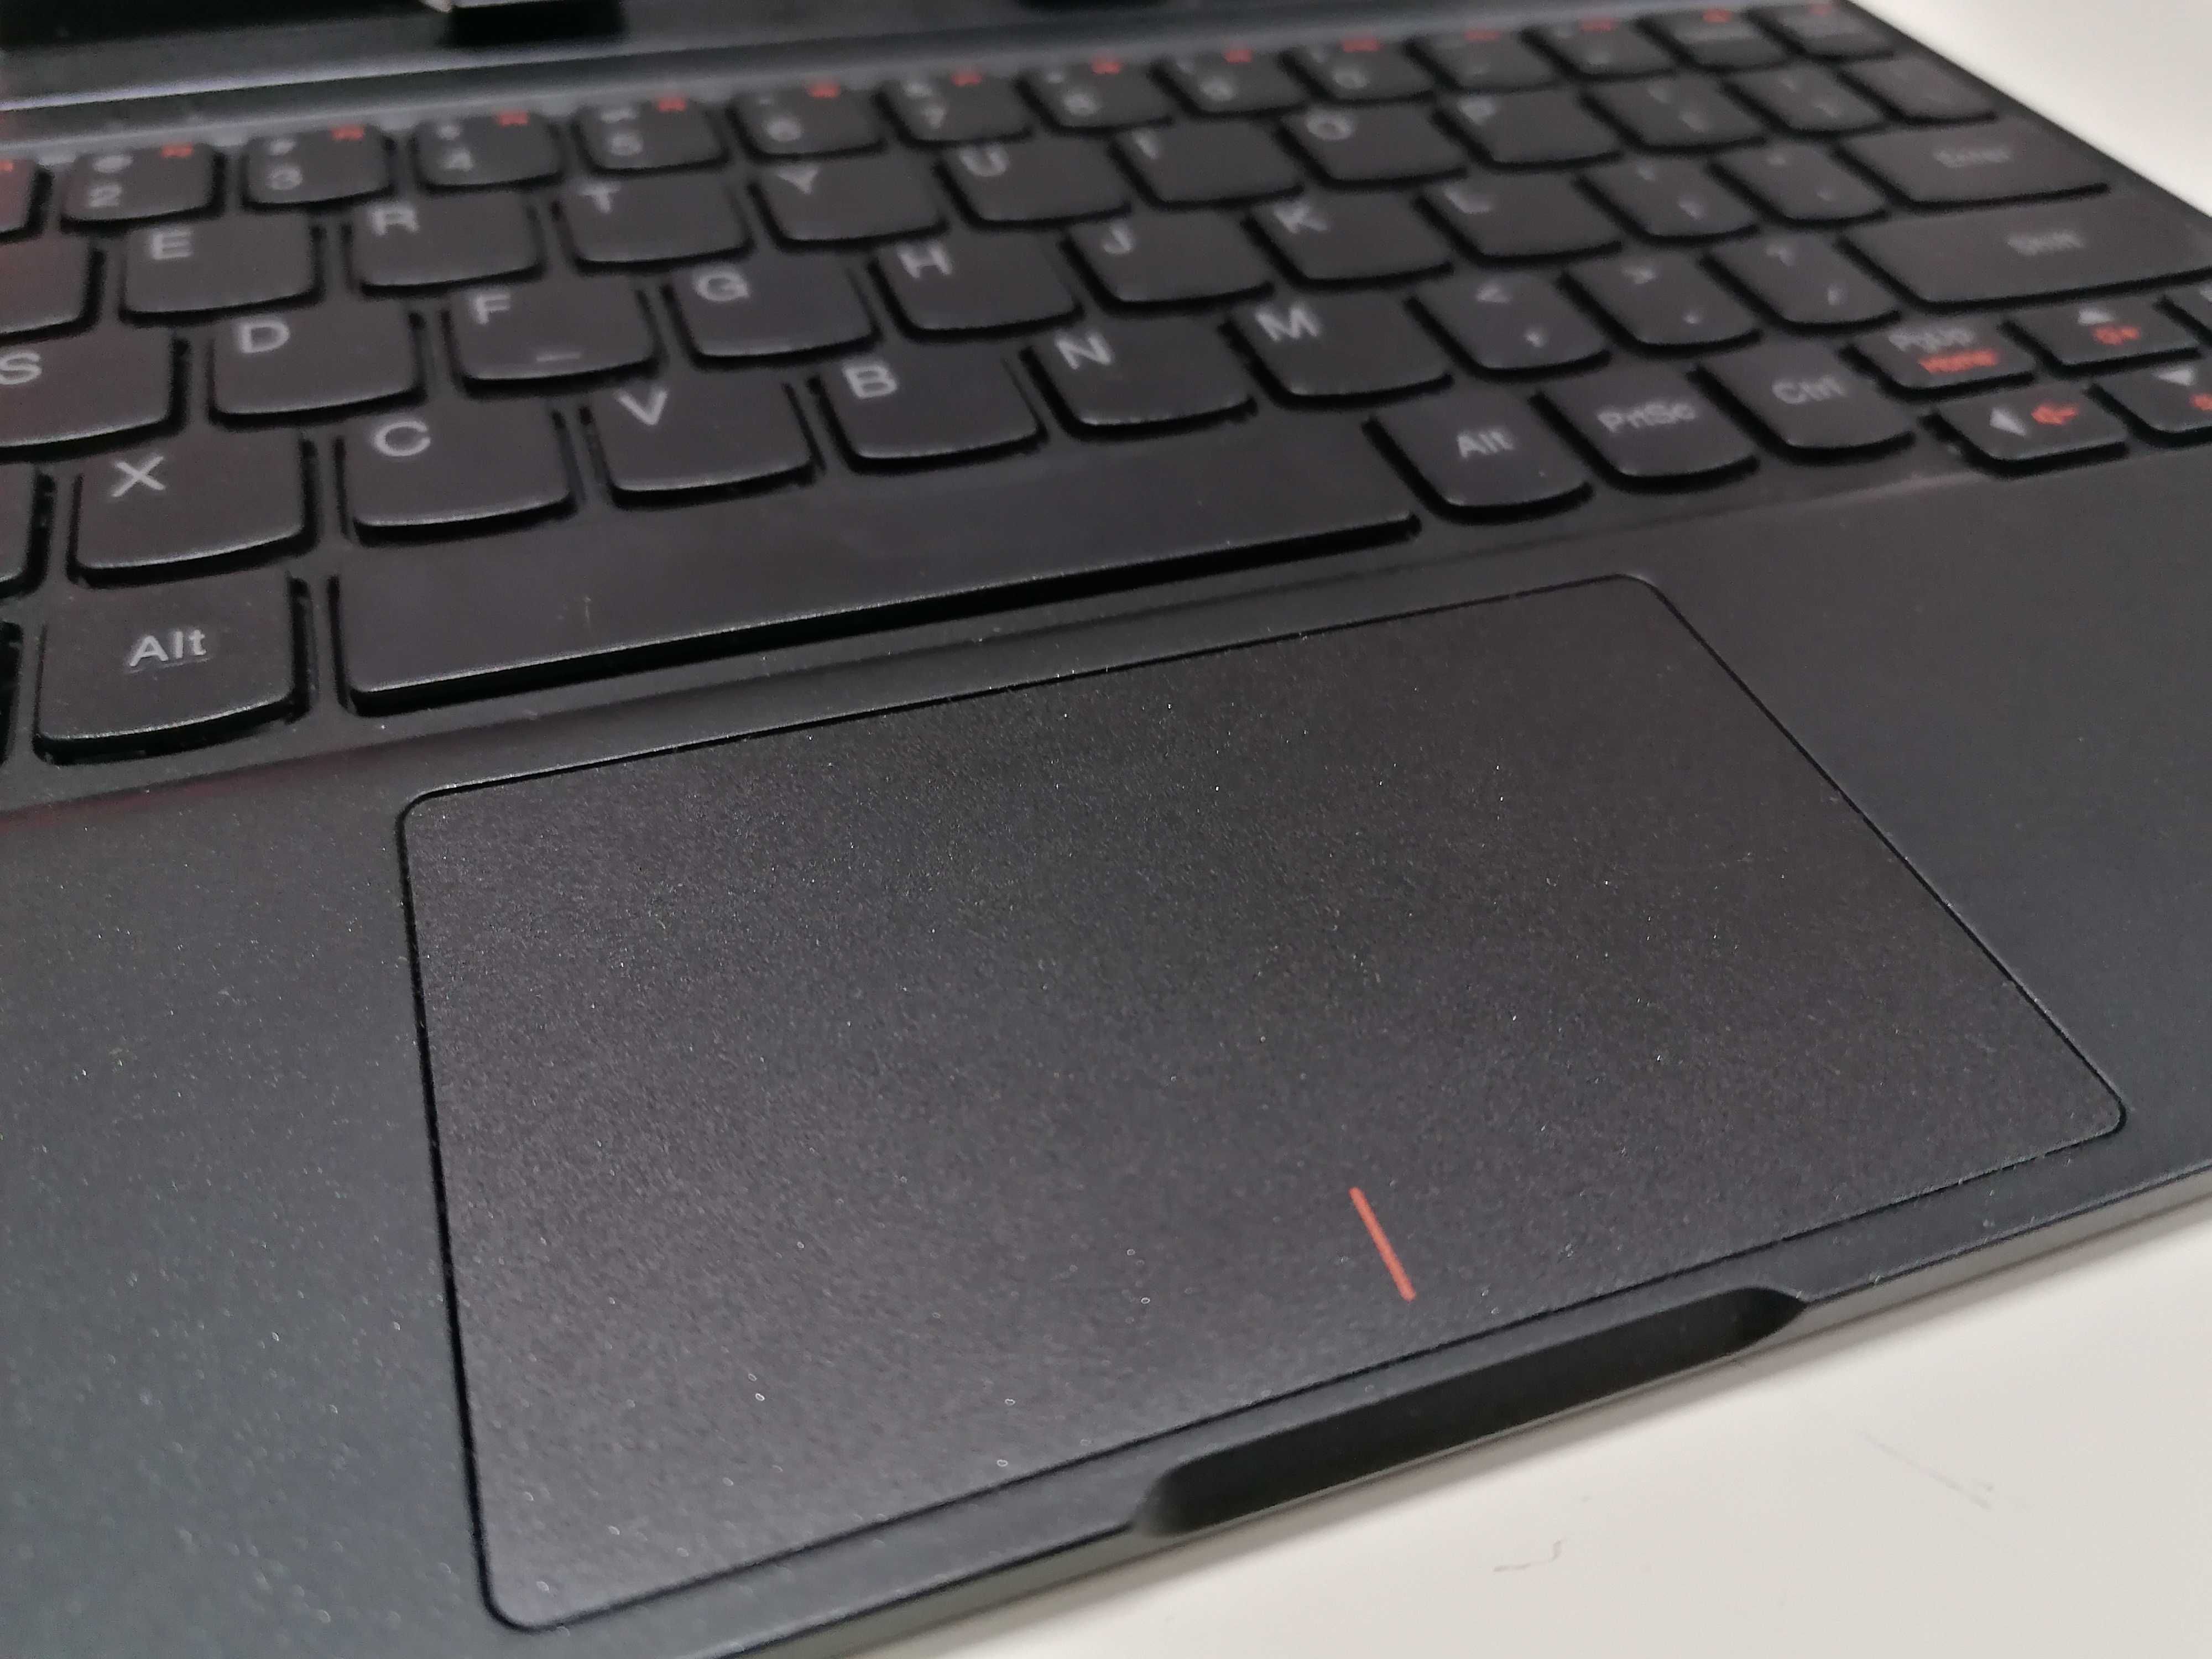 Odpinana klawiatura Lenovo Miix 300 idealna z touchpad'em